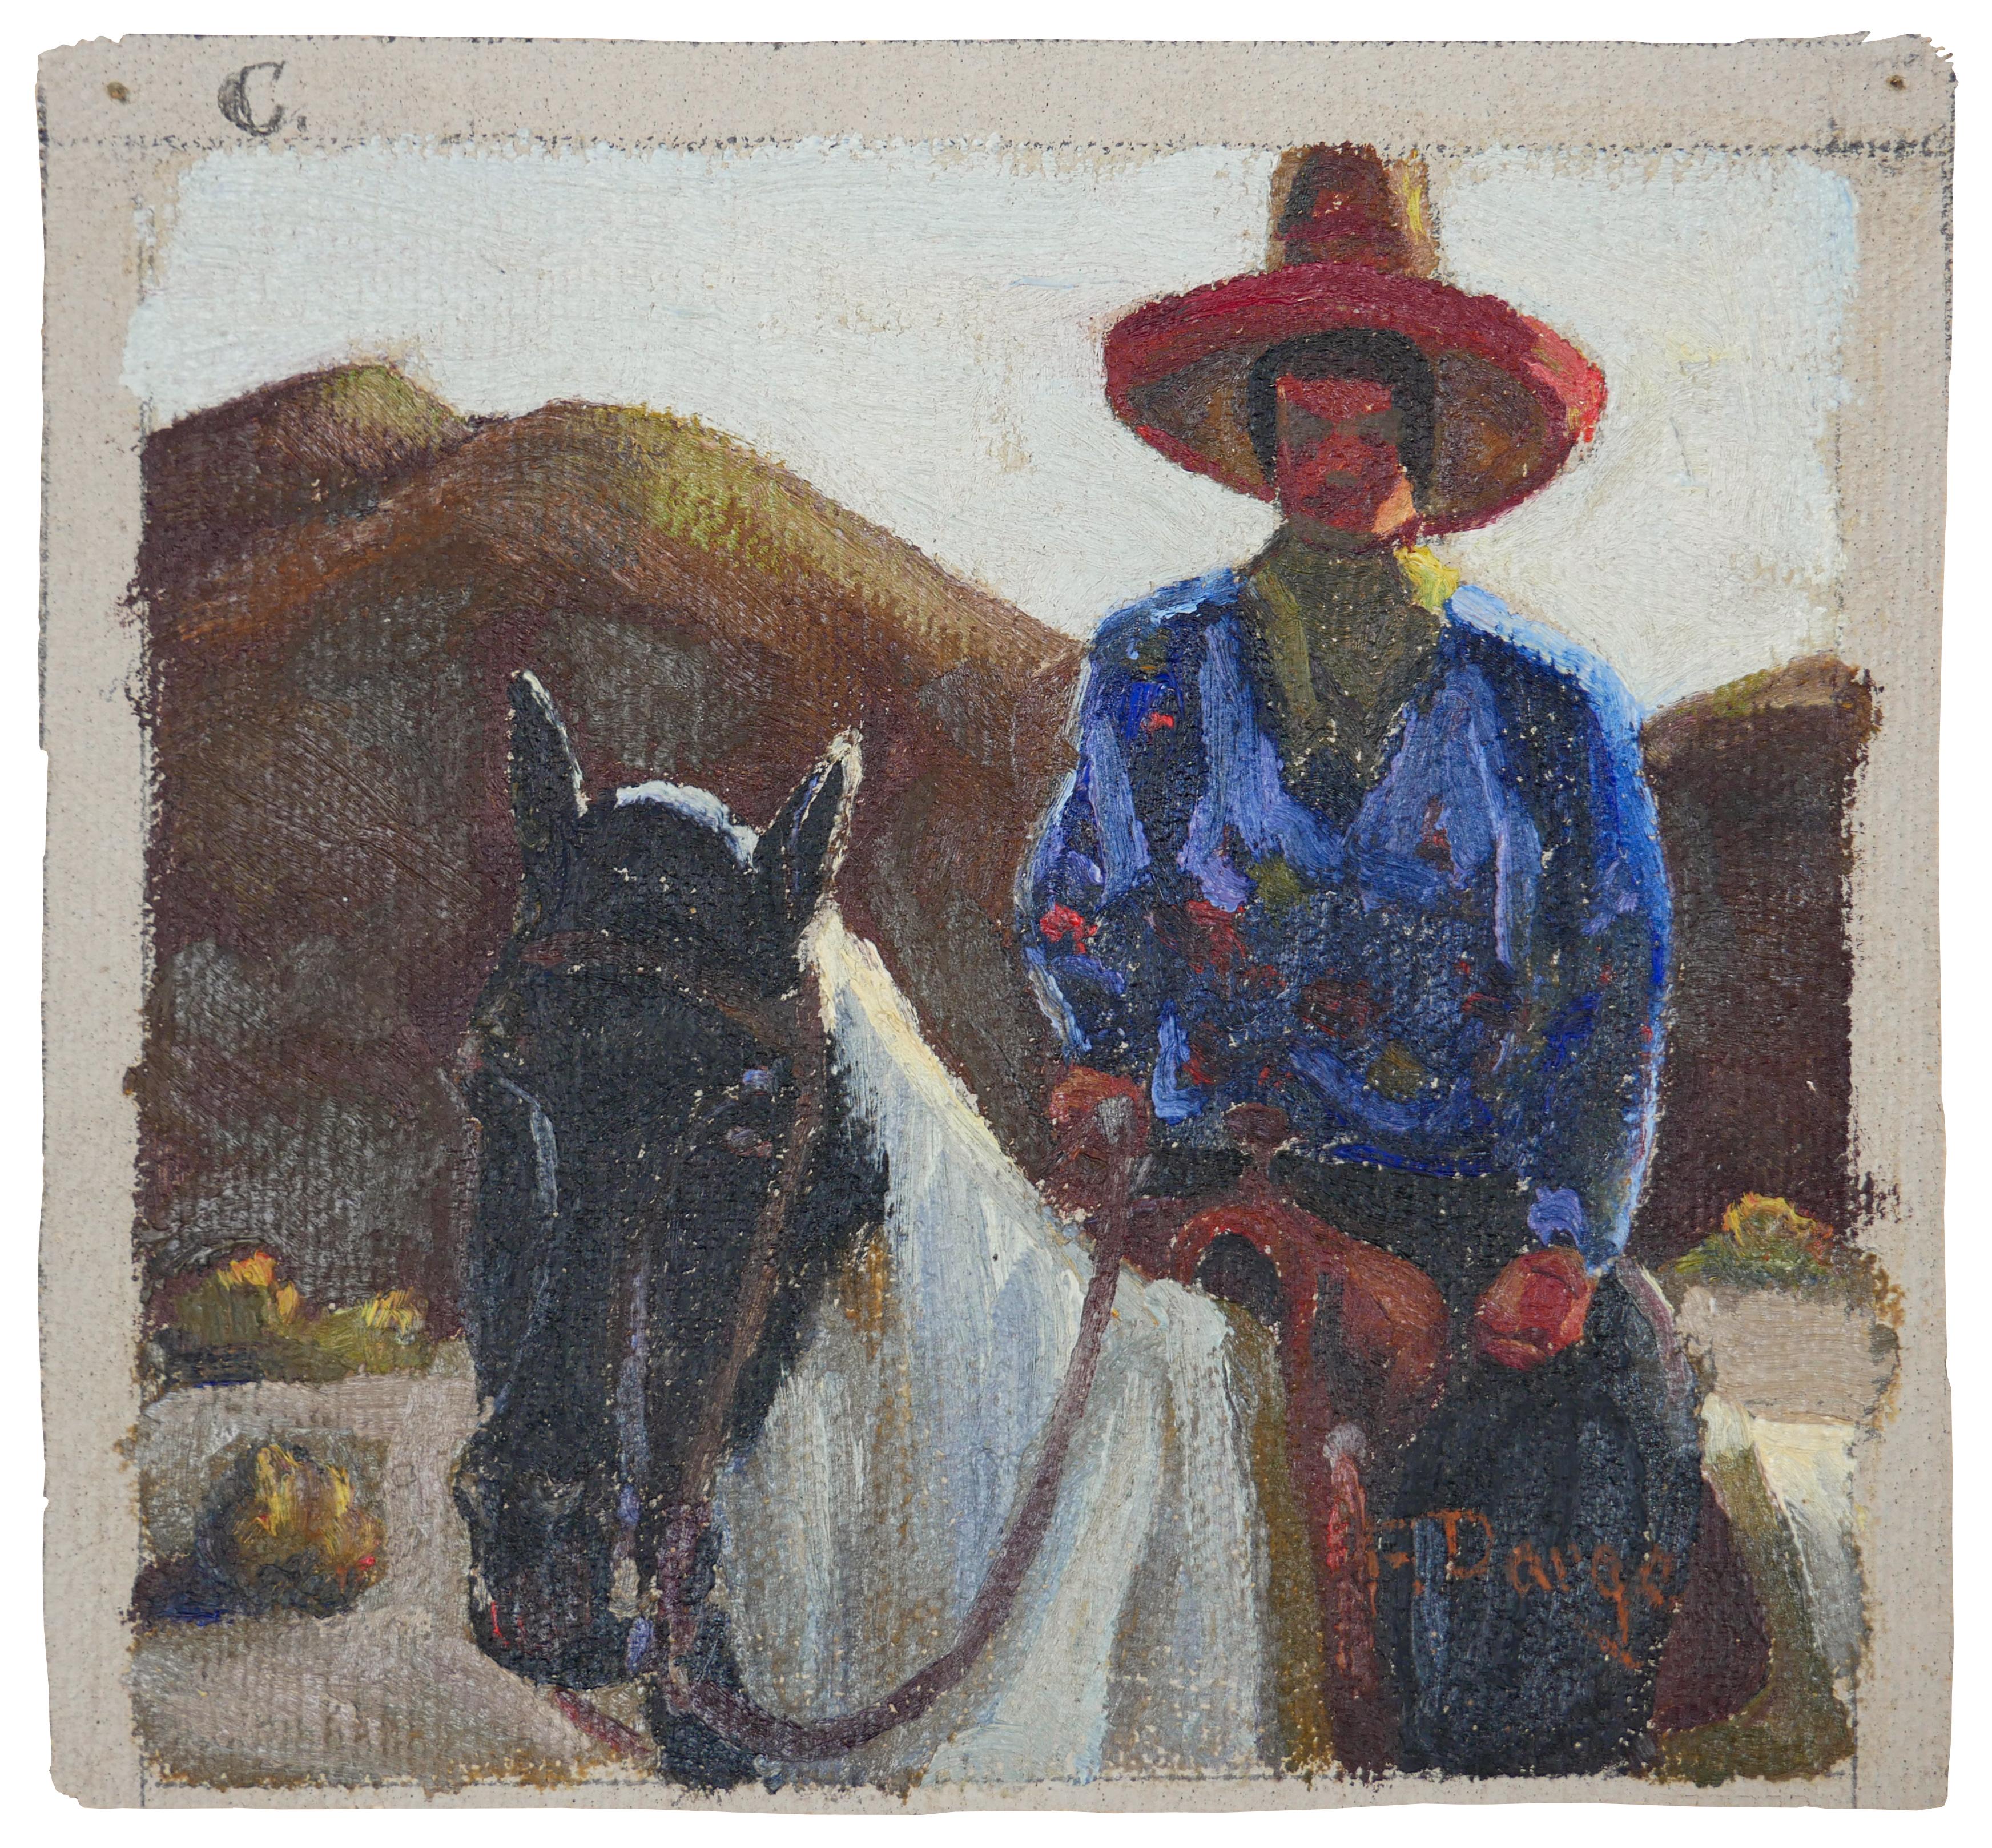 Fred Darge Animal Painting – Abstrakt-impressionistisches Gemälde eines Cowboys auf einem Pferd in Blau, Rot und Braun